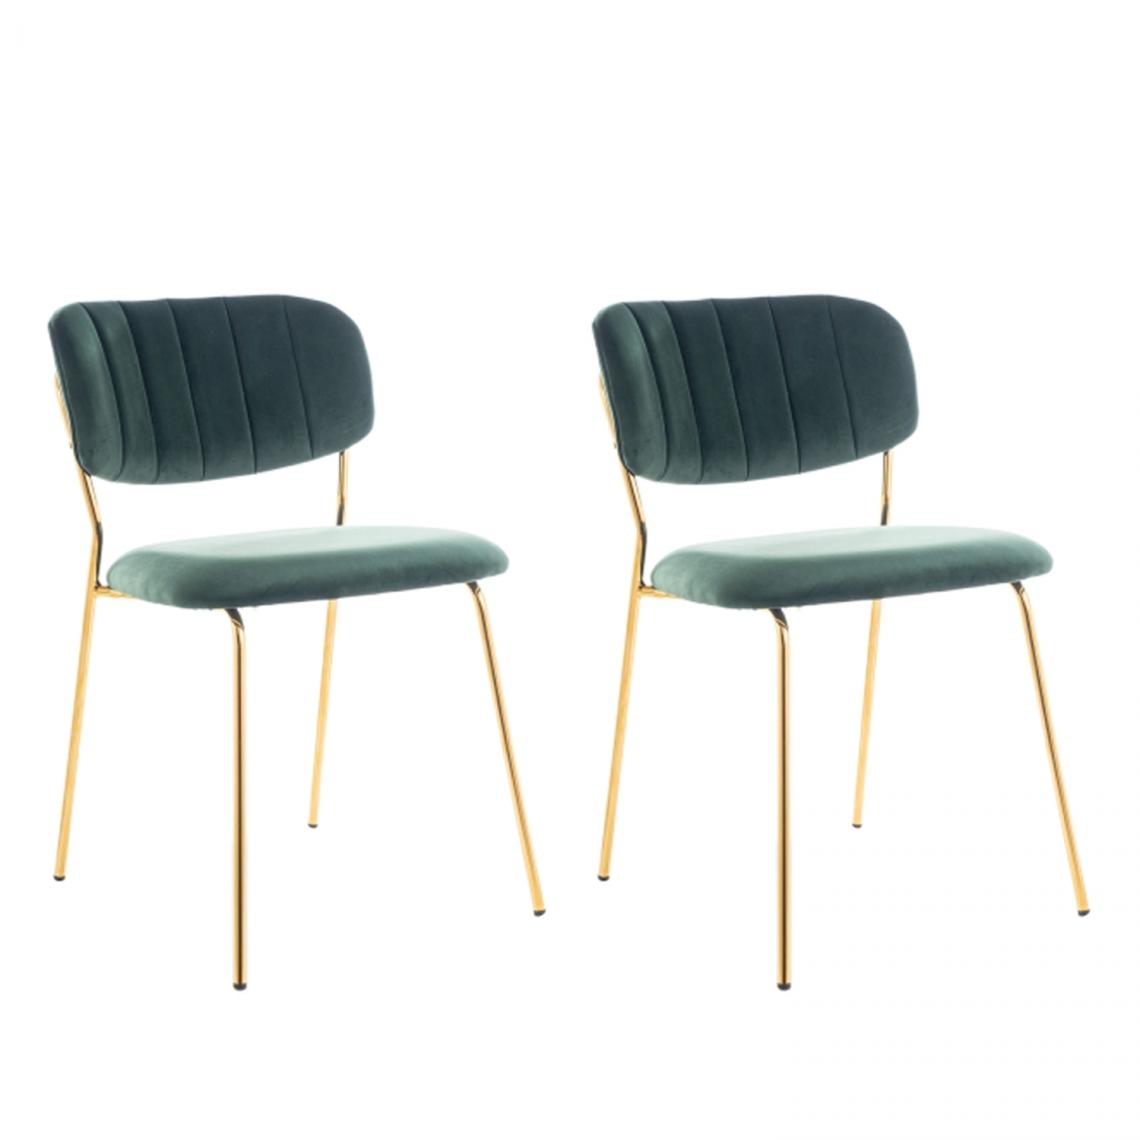 Hucoco - CARTO - Lot de 2 chaises matelassées salle à manger - 80x49x55 cm - Cadre en métal + tissu velours - Vert - Chaises